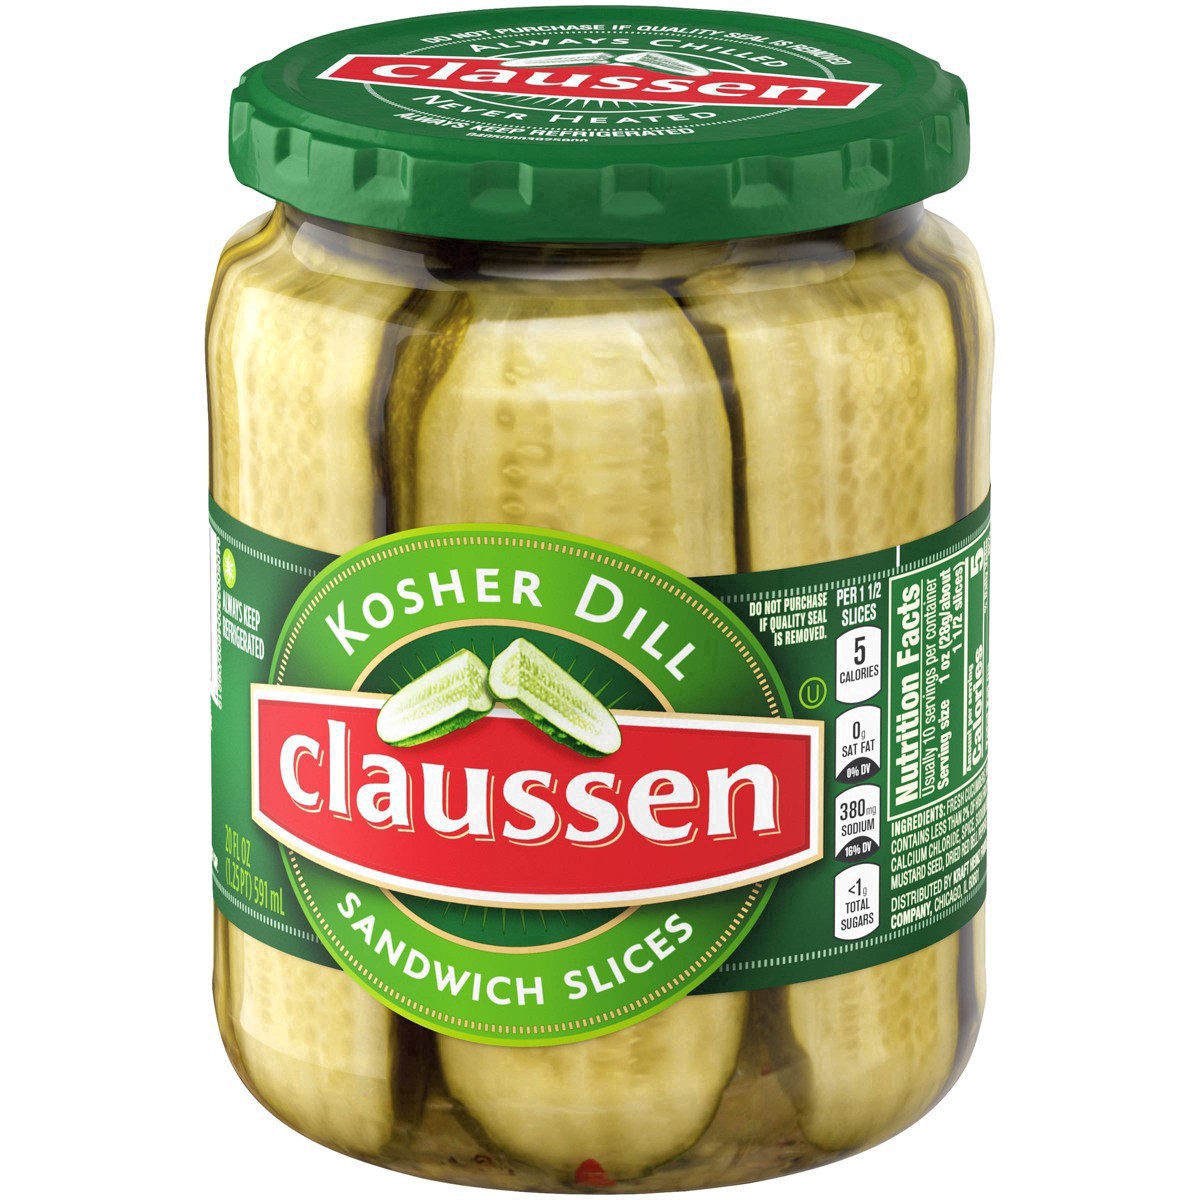 slide 8 of 144, Claussen Kosher Dill Pickle Sandwich Slices, 20 fl. oz. Jar, 20 fl oz